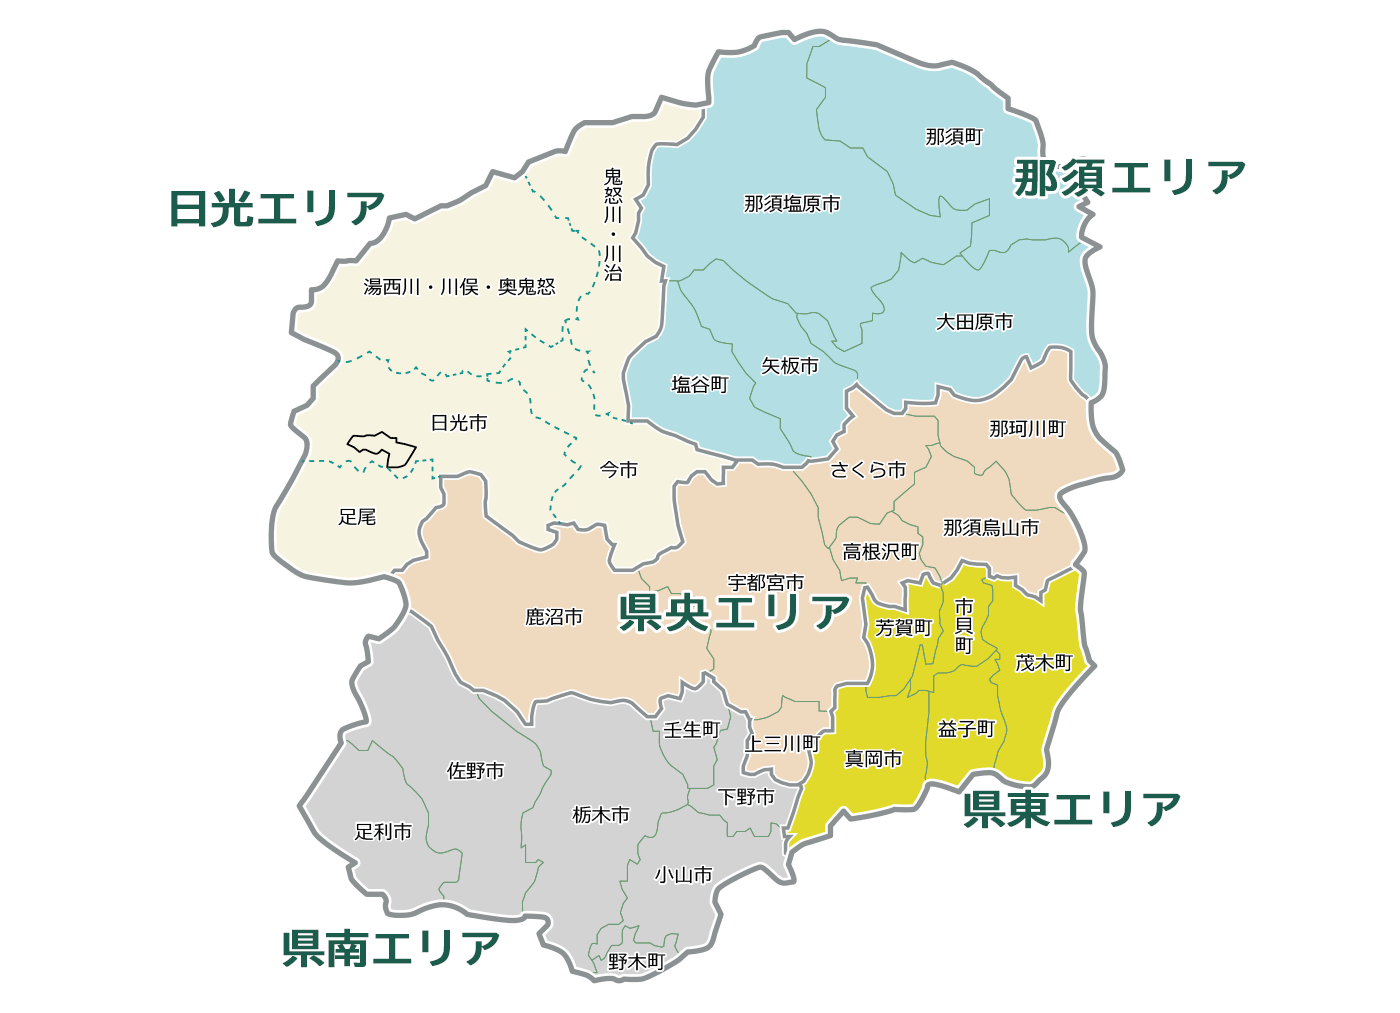 栃木料金表地図